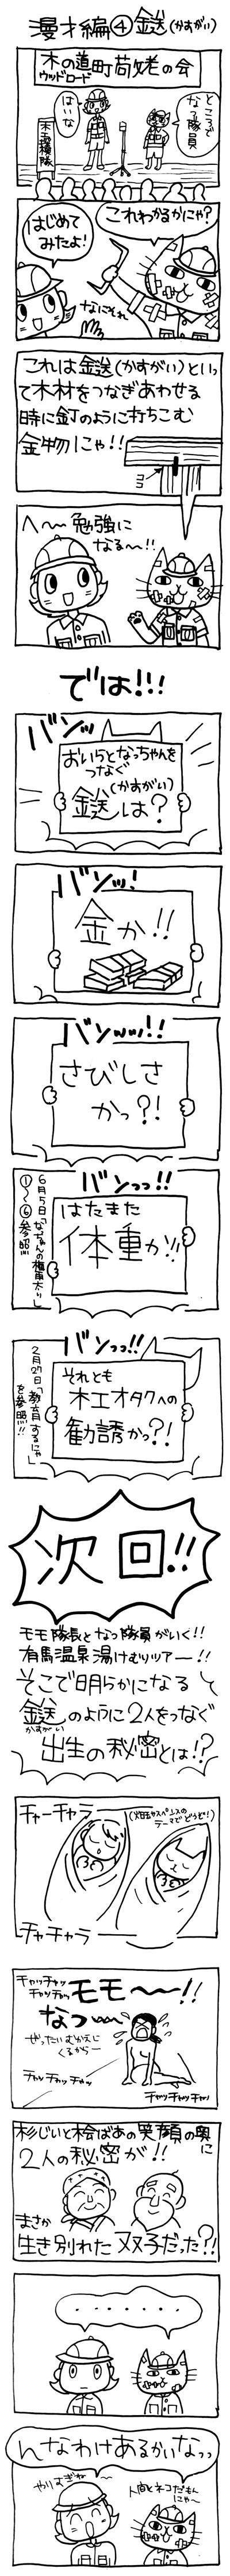 木工漫画　漫才編 ④ 鎹（かすがい）0902